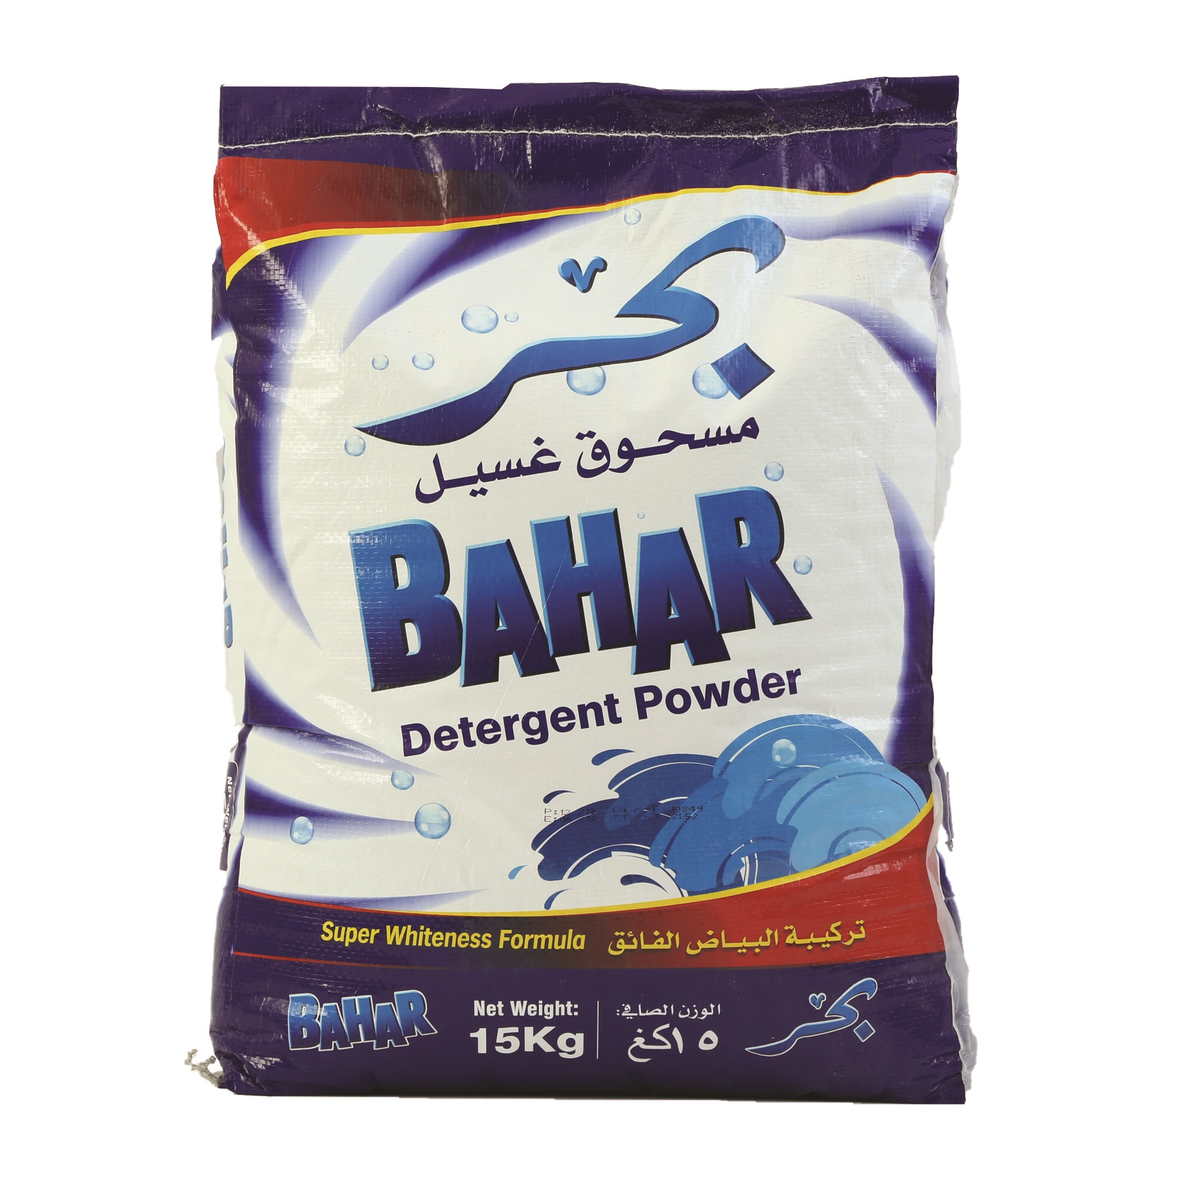 Bahar Detergent Powder 15kg